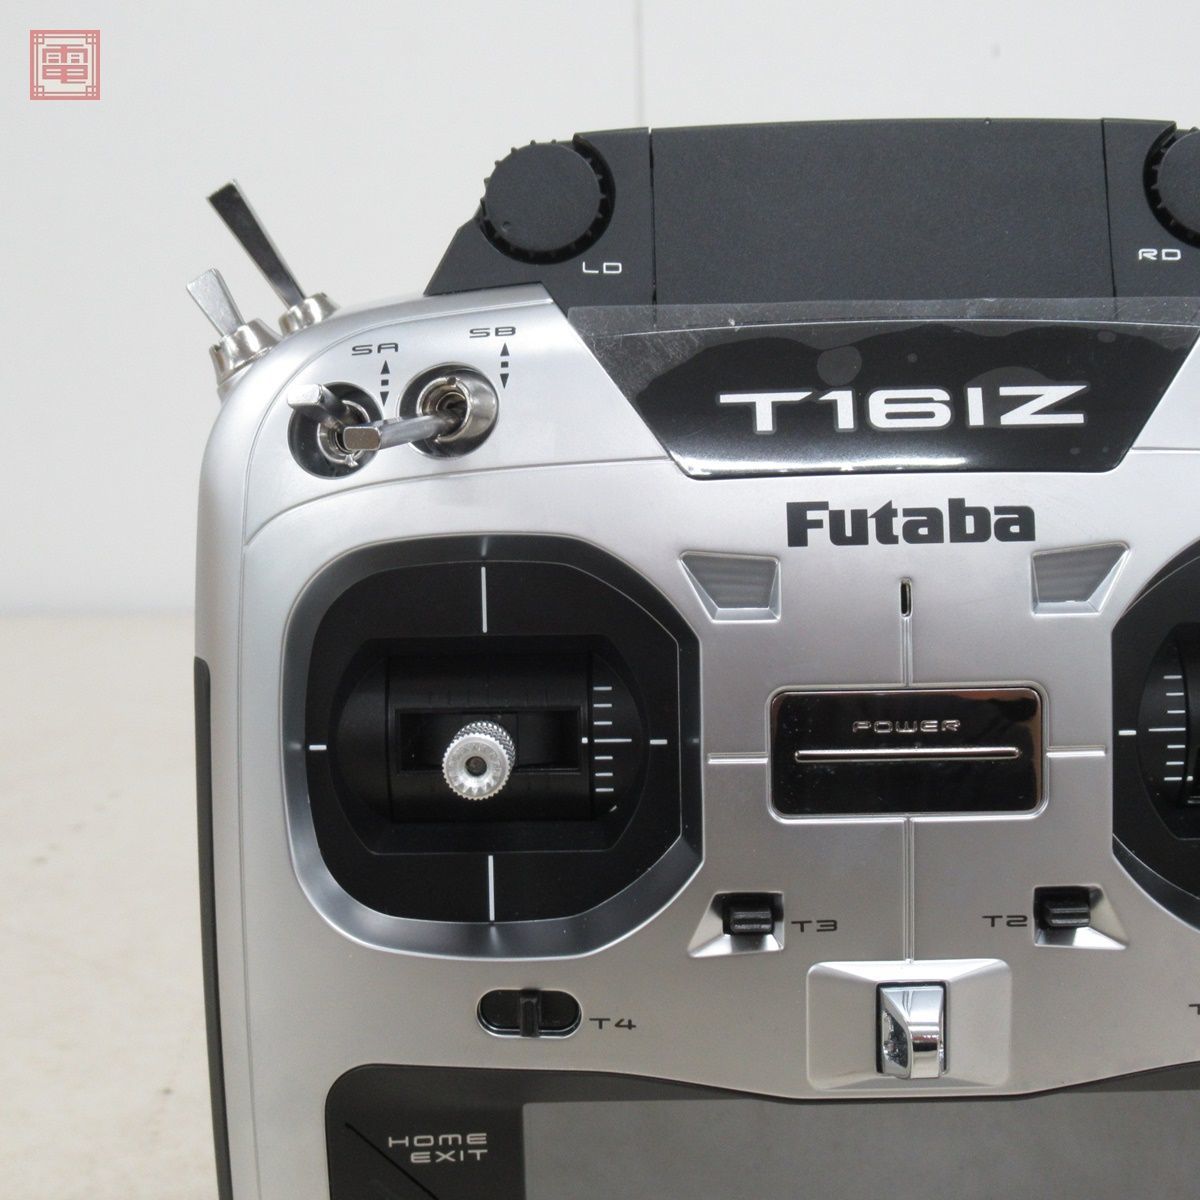 フタバ T16IZ 2.4GHz 18ch プロポ 送信機 Futaba 通電のみ確認 現状品